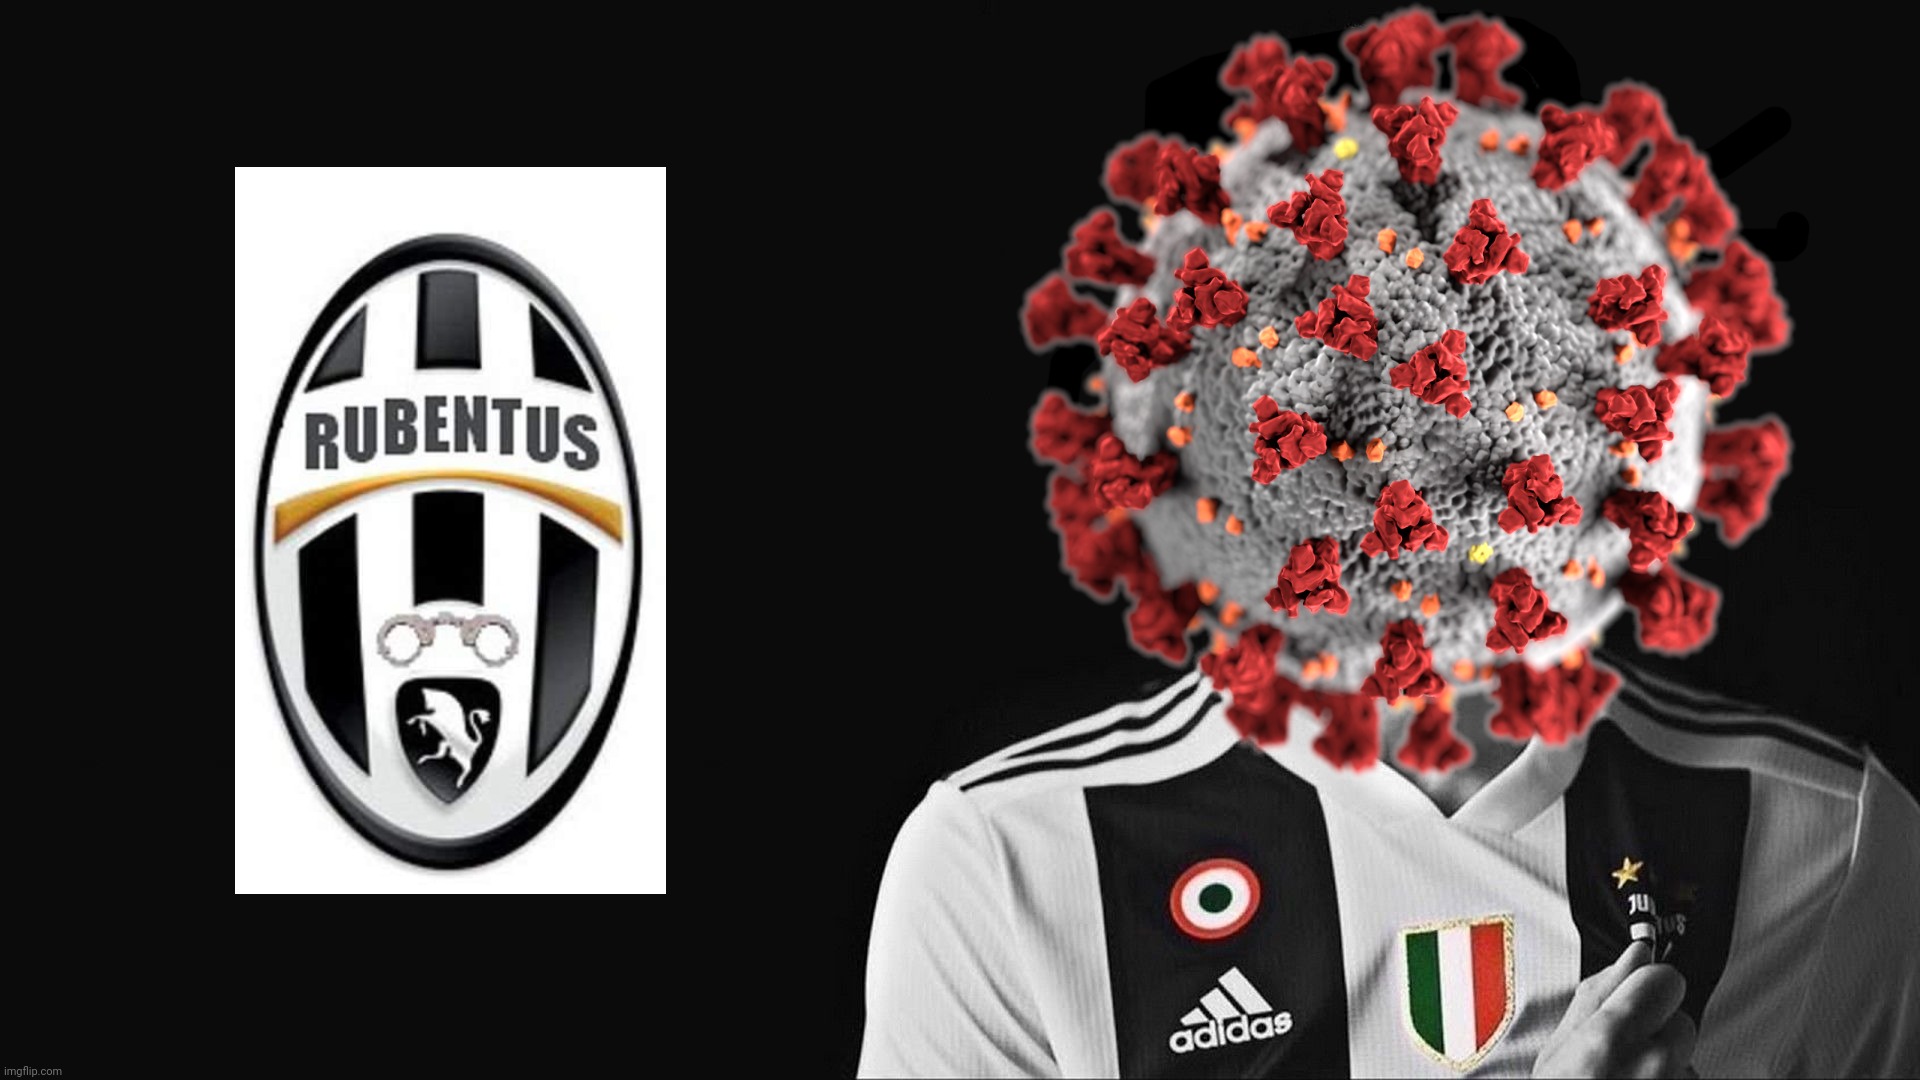 IL COVID COLPISCE ANCORA: Incredibile - Covid, Nuovo dodicessimo giocatore della Juventus (Rubentus) | image tagged in memes,coronavirus,covid-19,covid,juventus,villain | made w/ Imgflip meme maker